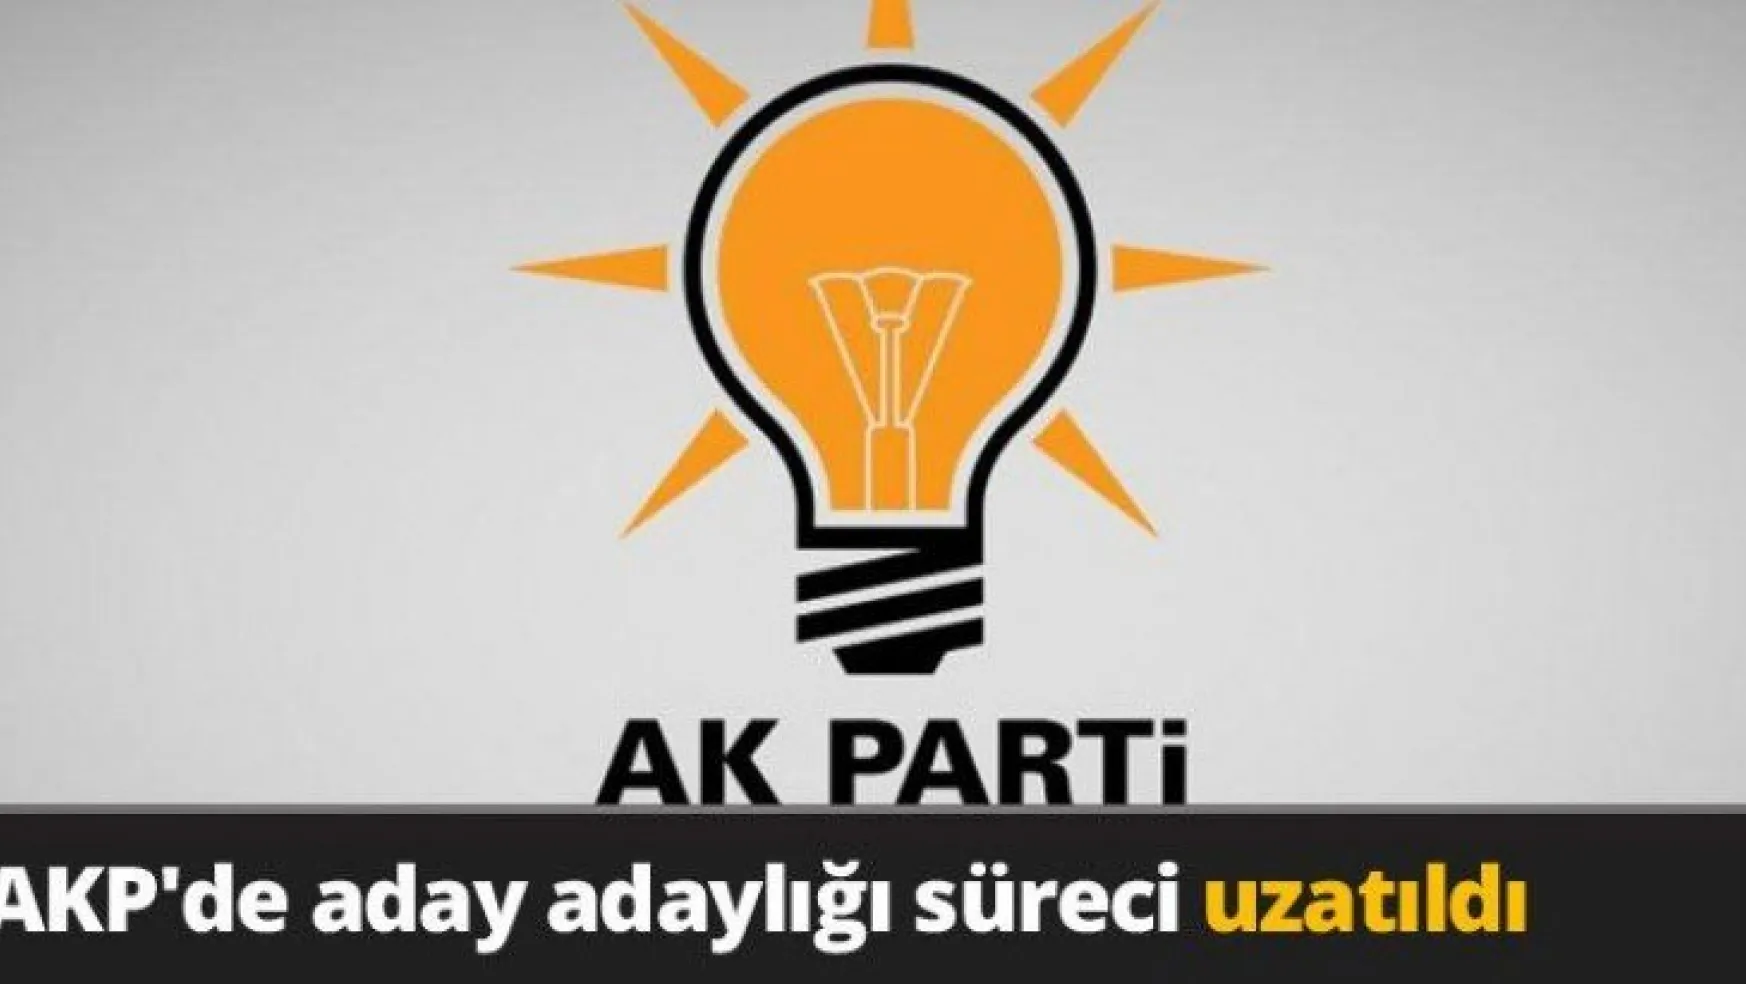 AKP'de aday adaylığı süreci uzatıldı